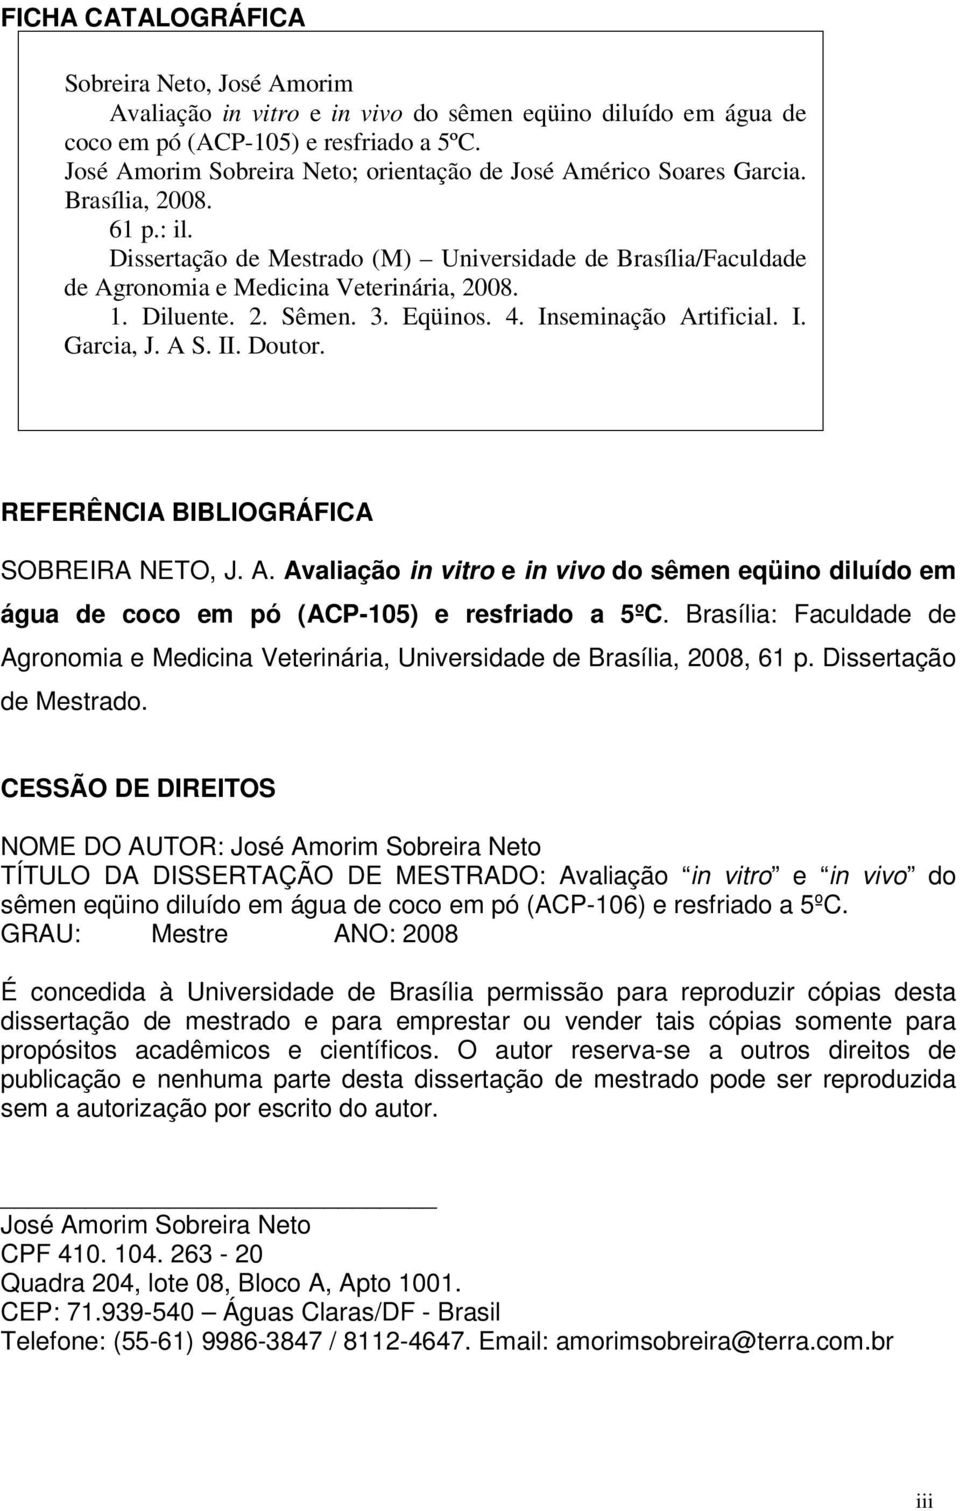 Dissertação de Mestrado (M) Universidade de Brasília/Faculdade de Agronomia e Medicina Veterinária, 2008. 1. Diluente. 2. Sêmen. 3. Eqüinos. 4. Inseminação Artificial. I. Garcia, J. A S. II. Doutor.